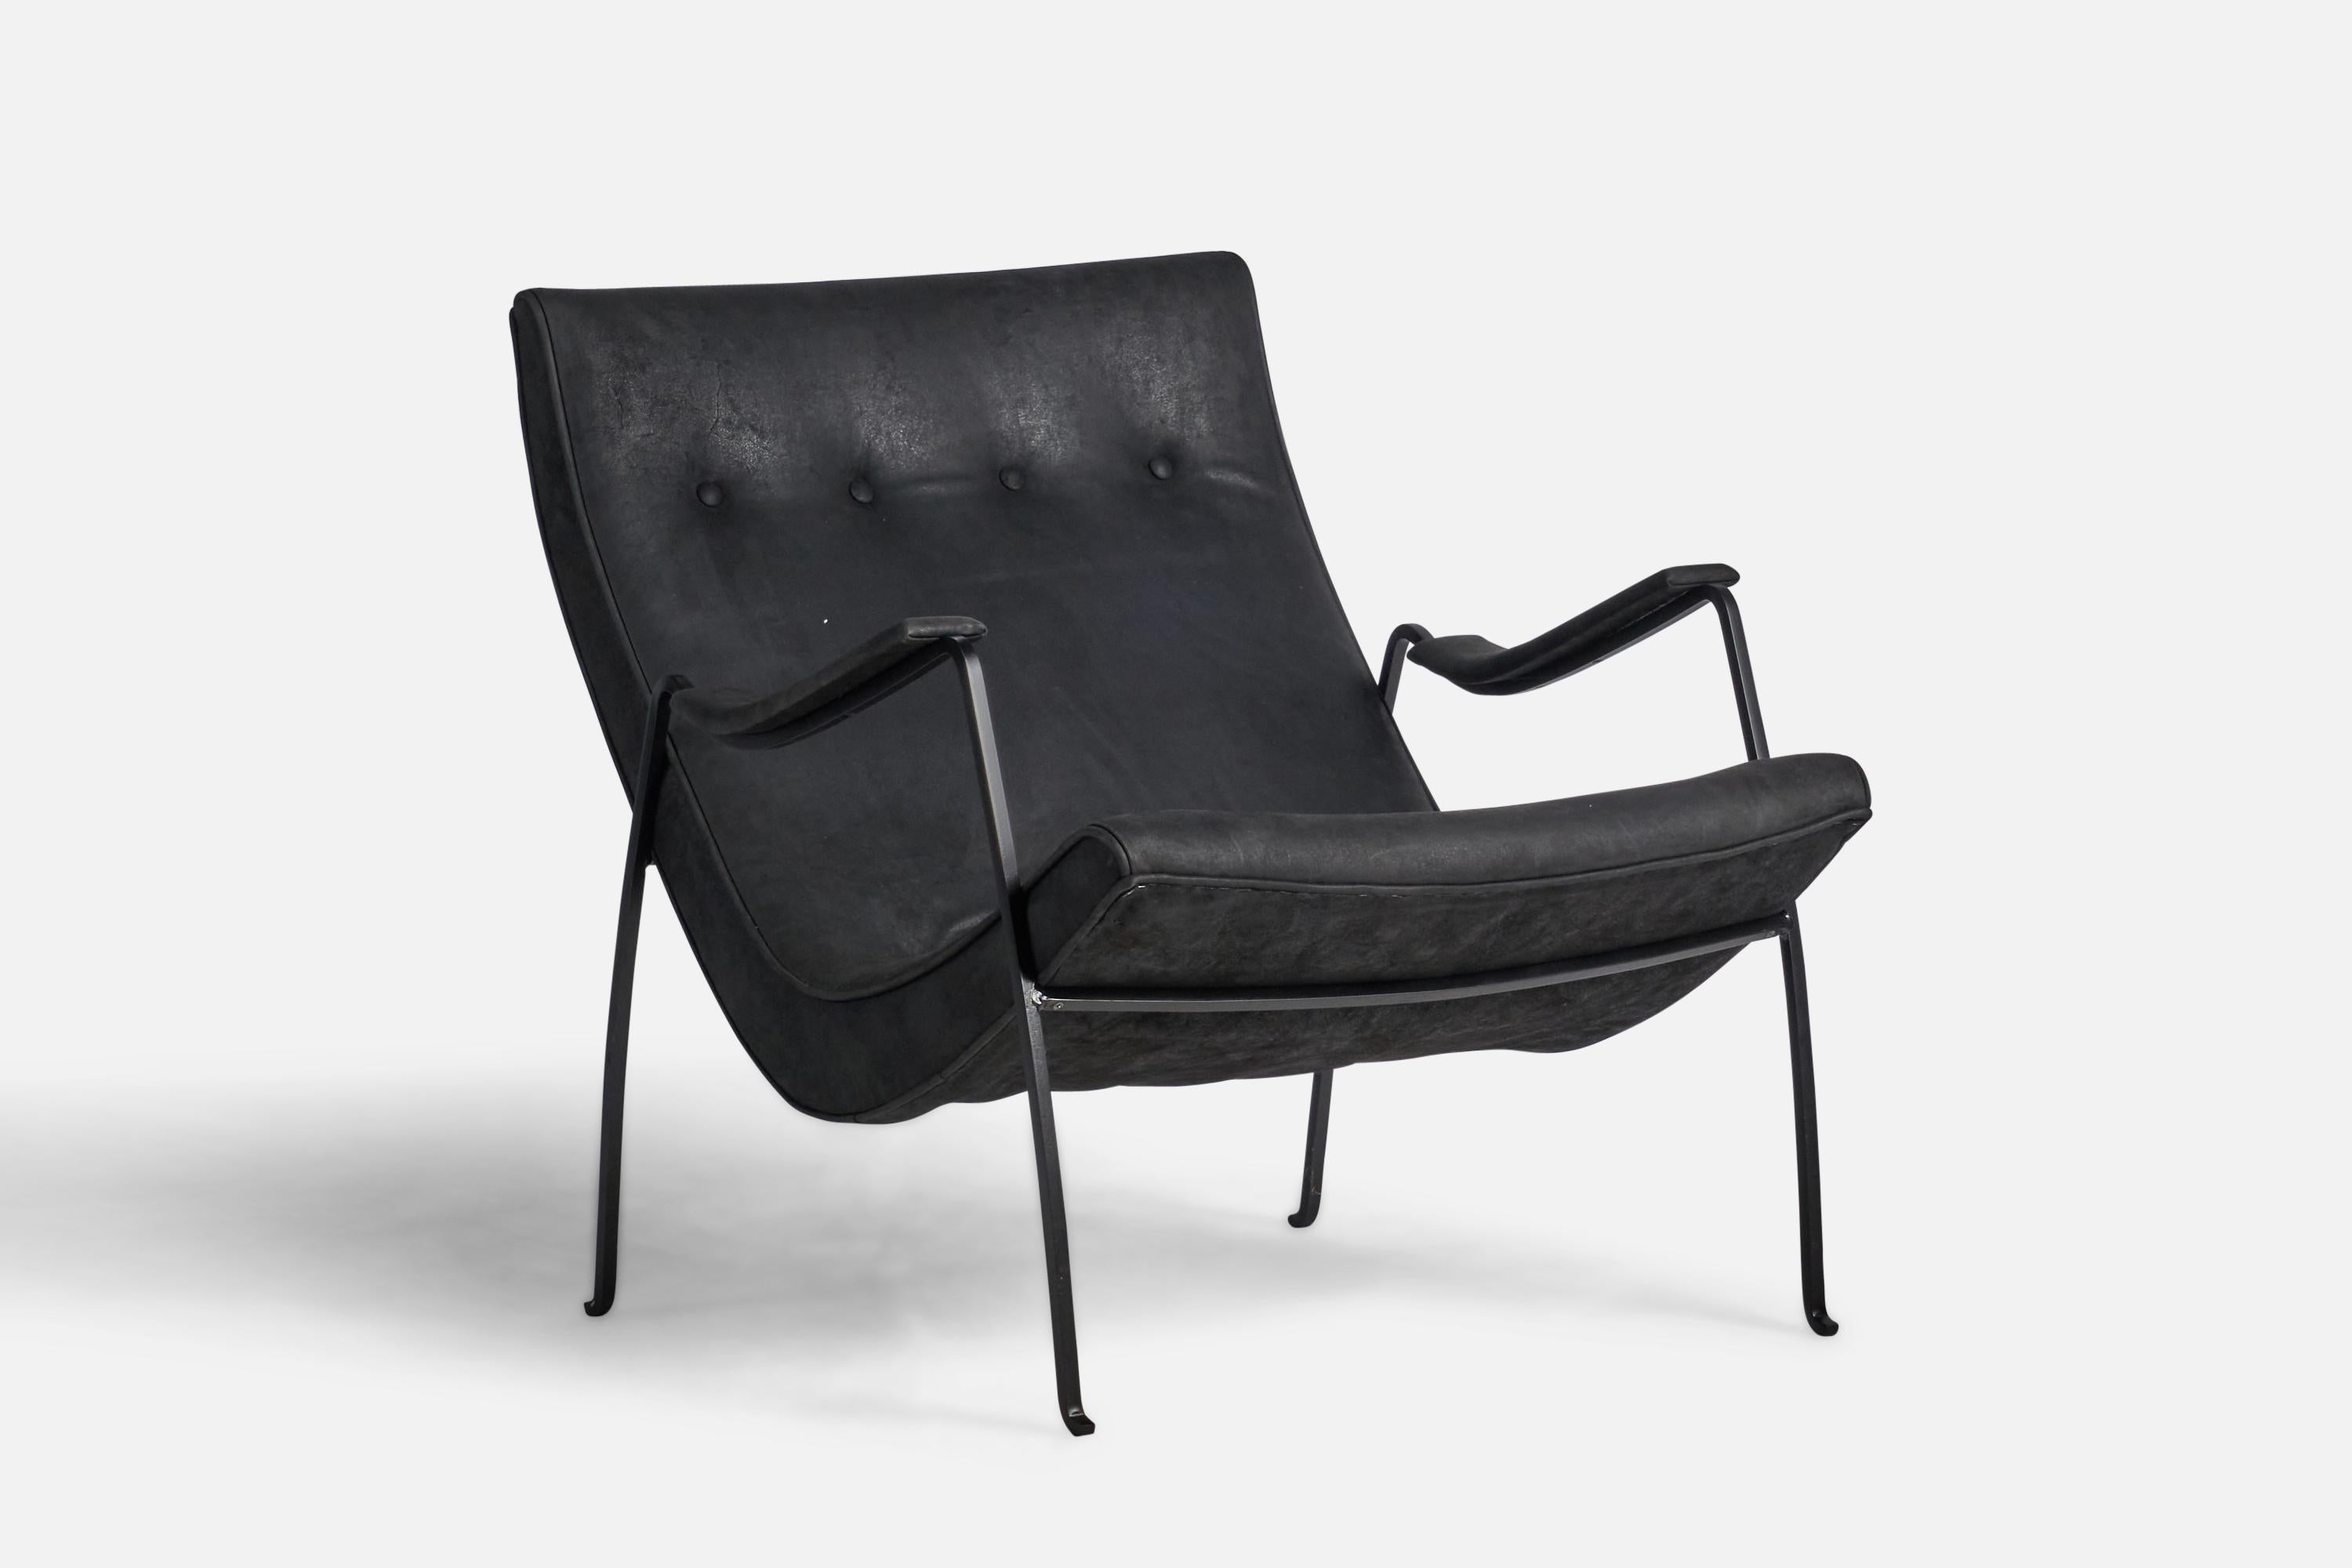 Sessel aus schwarz lackiertem Metall und schwarzem Leder, entworfen von Milo Baughman und hergestellt von Thayer Coggin, High Point, North Carolina, USA, 1960er Jahre.